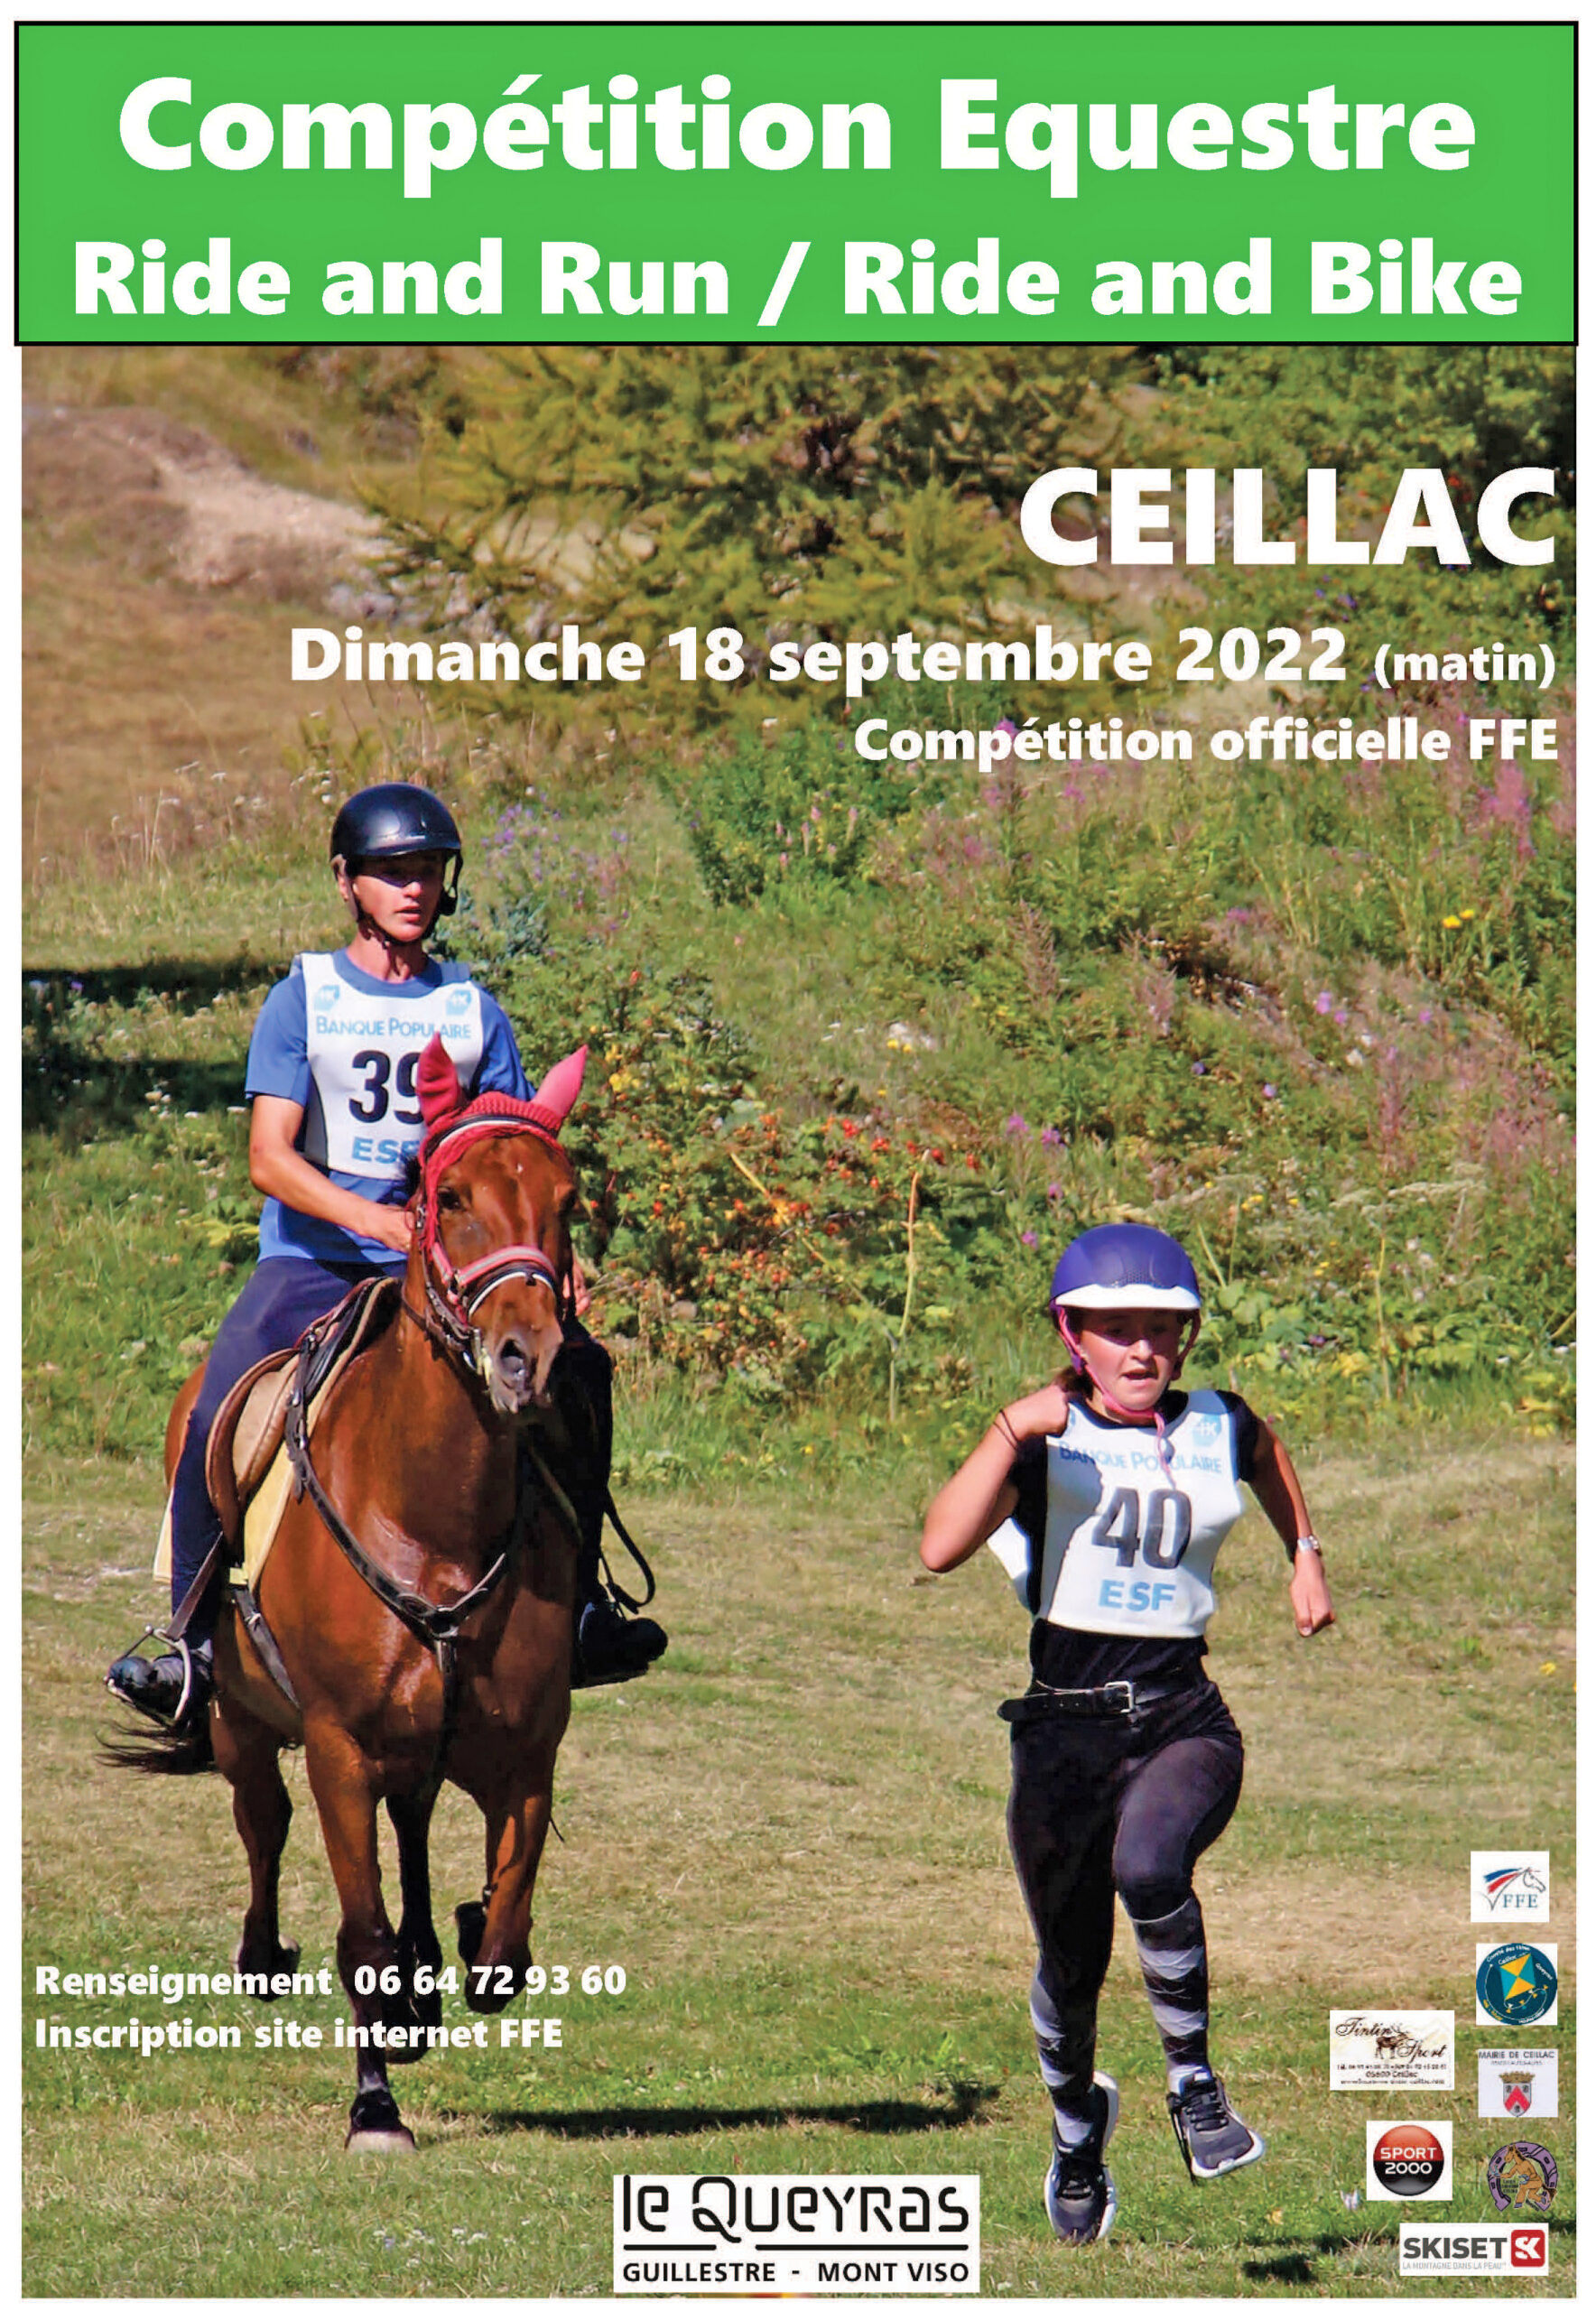 Compétition Equestre "Ride and run" et "Ride and Bike" Vallée de Ceillac